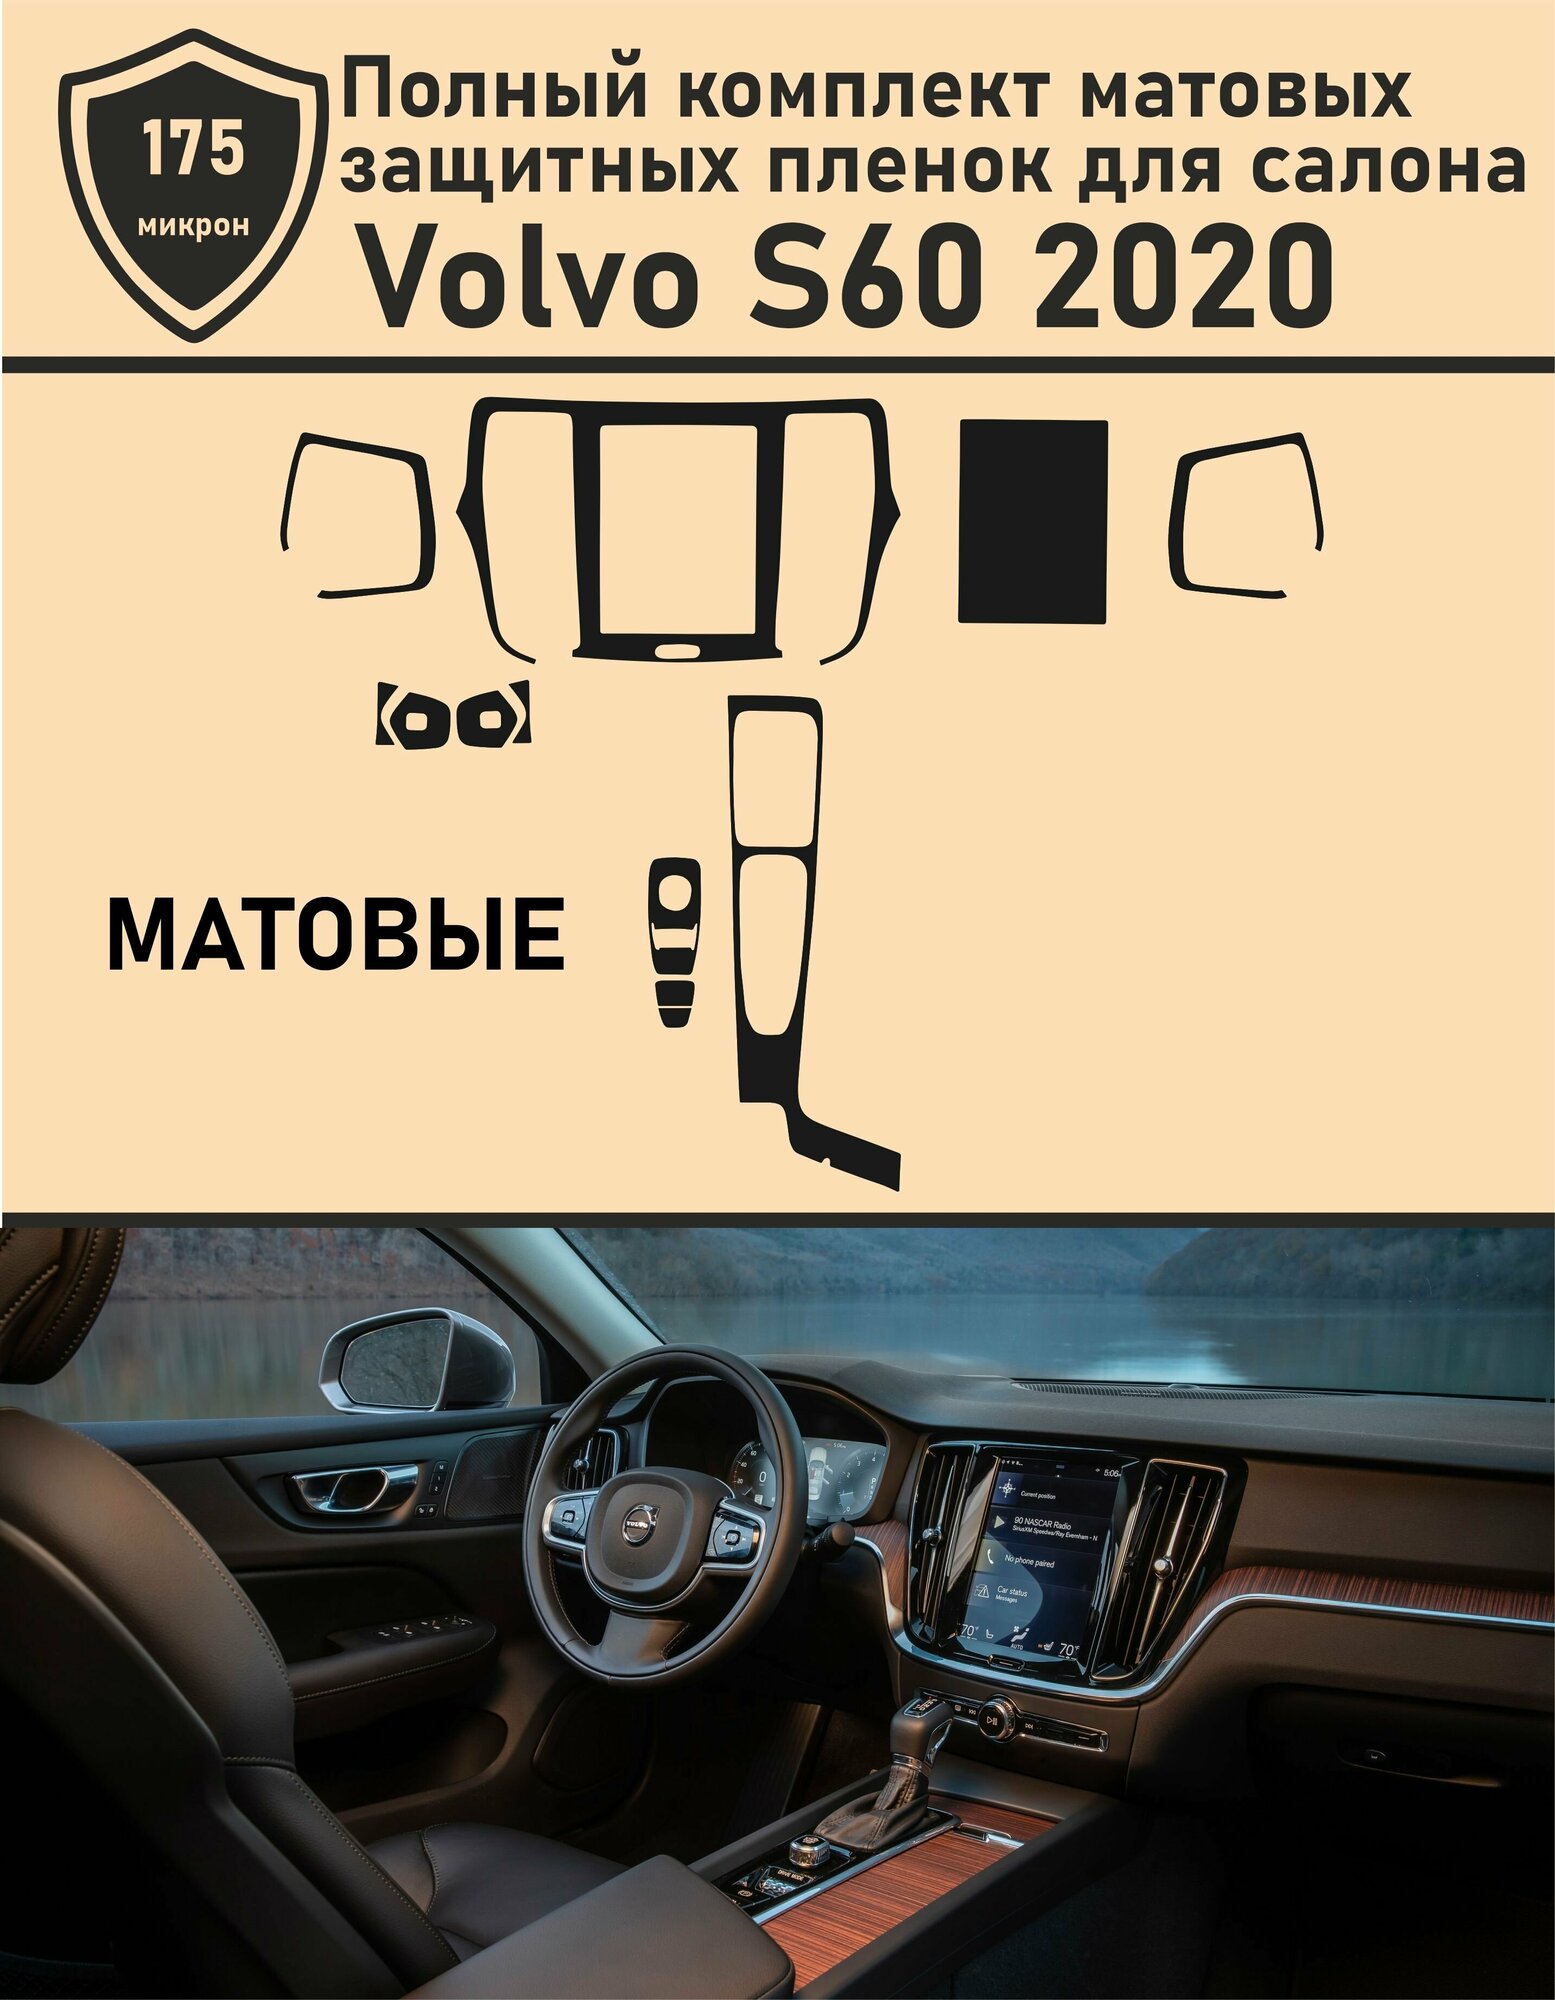 Volvo S60/Полный комплект матовых защитных пленок для салона